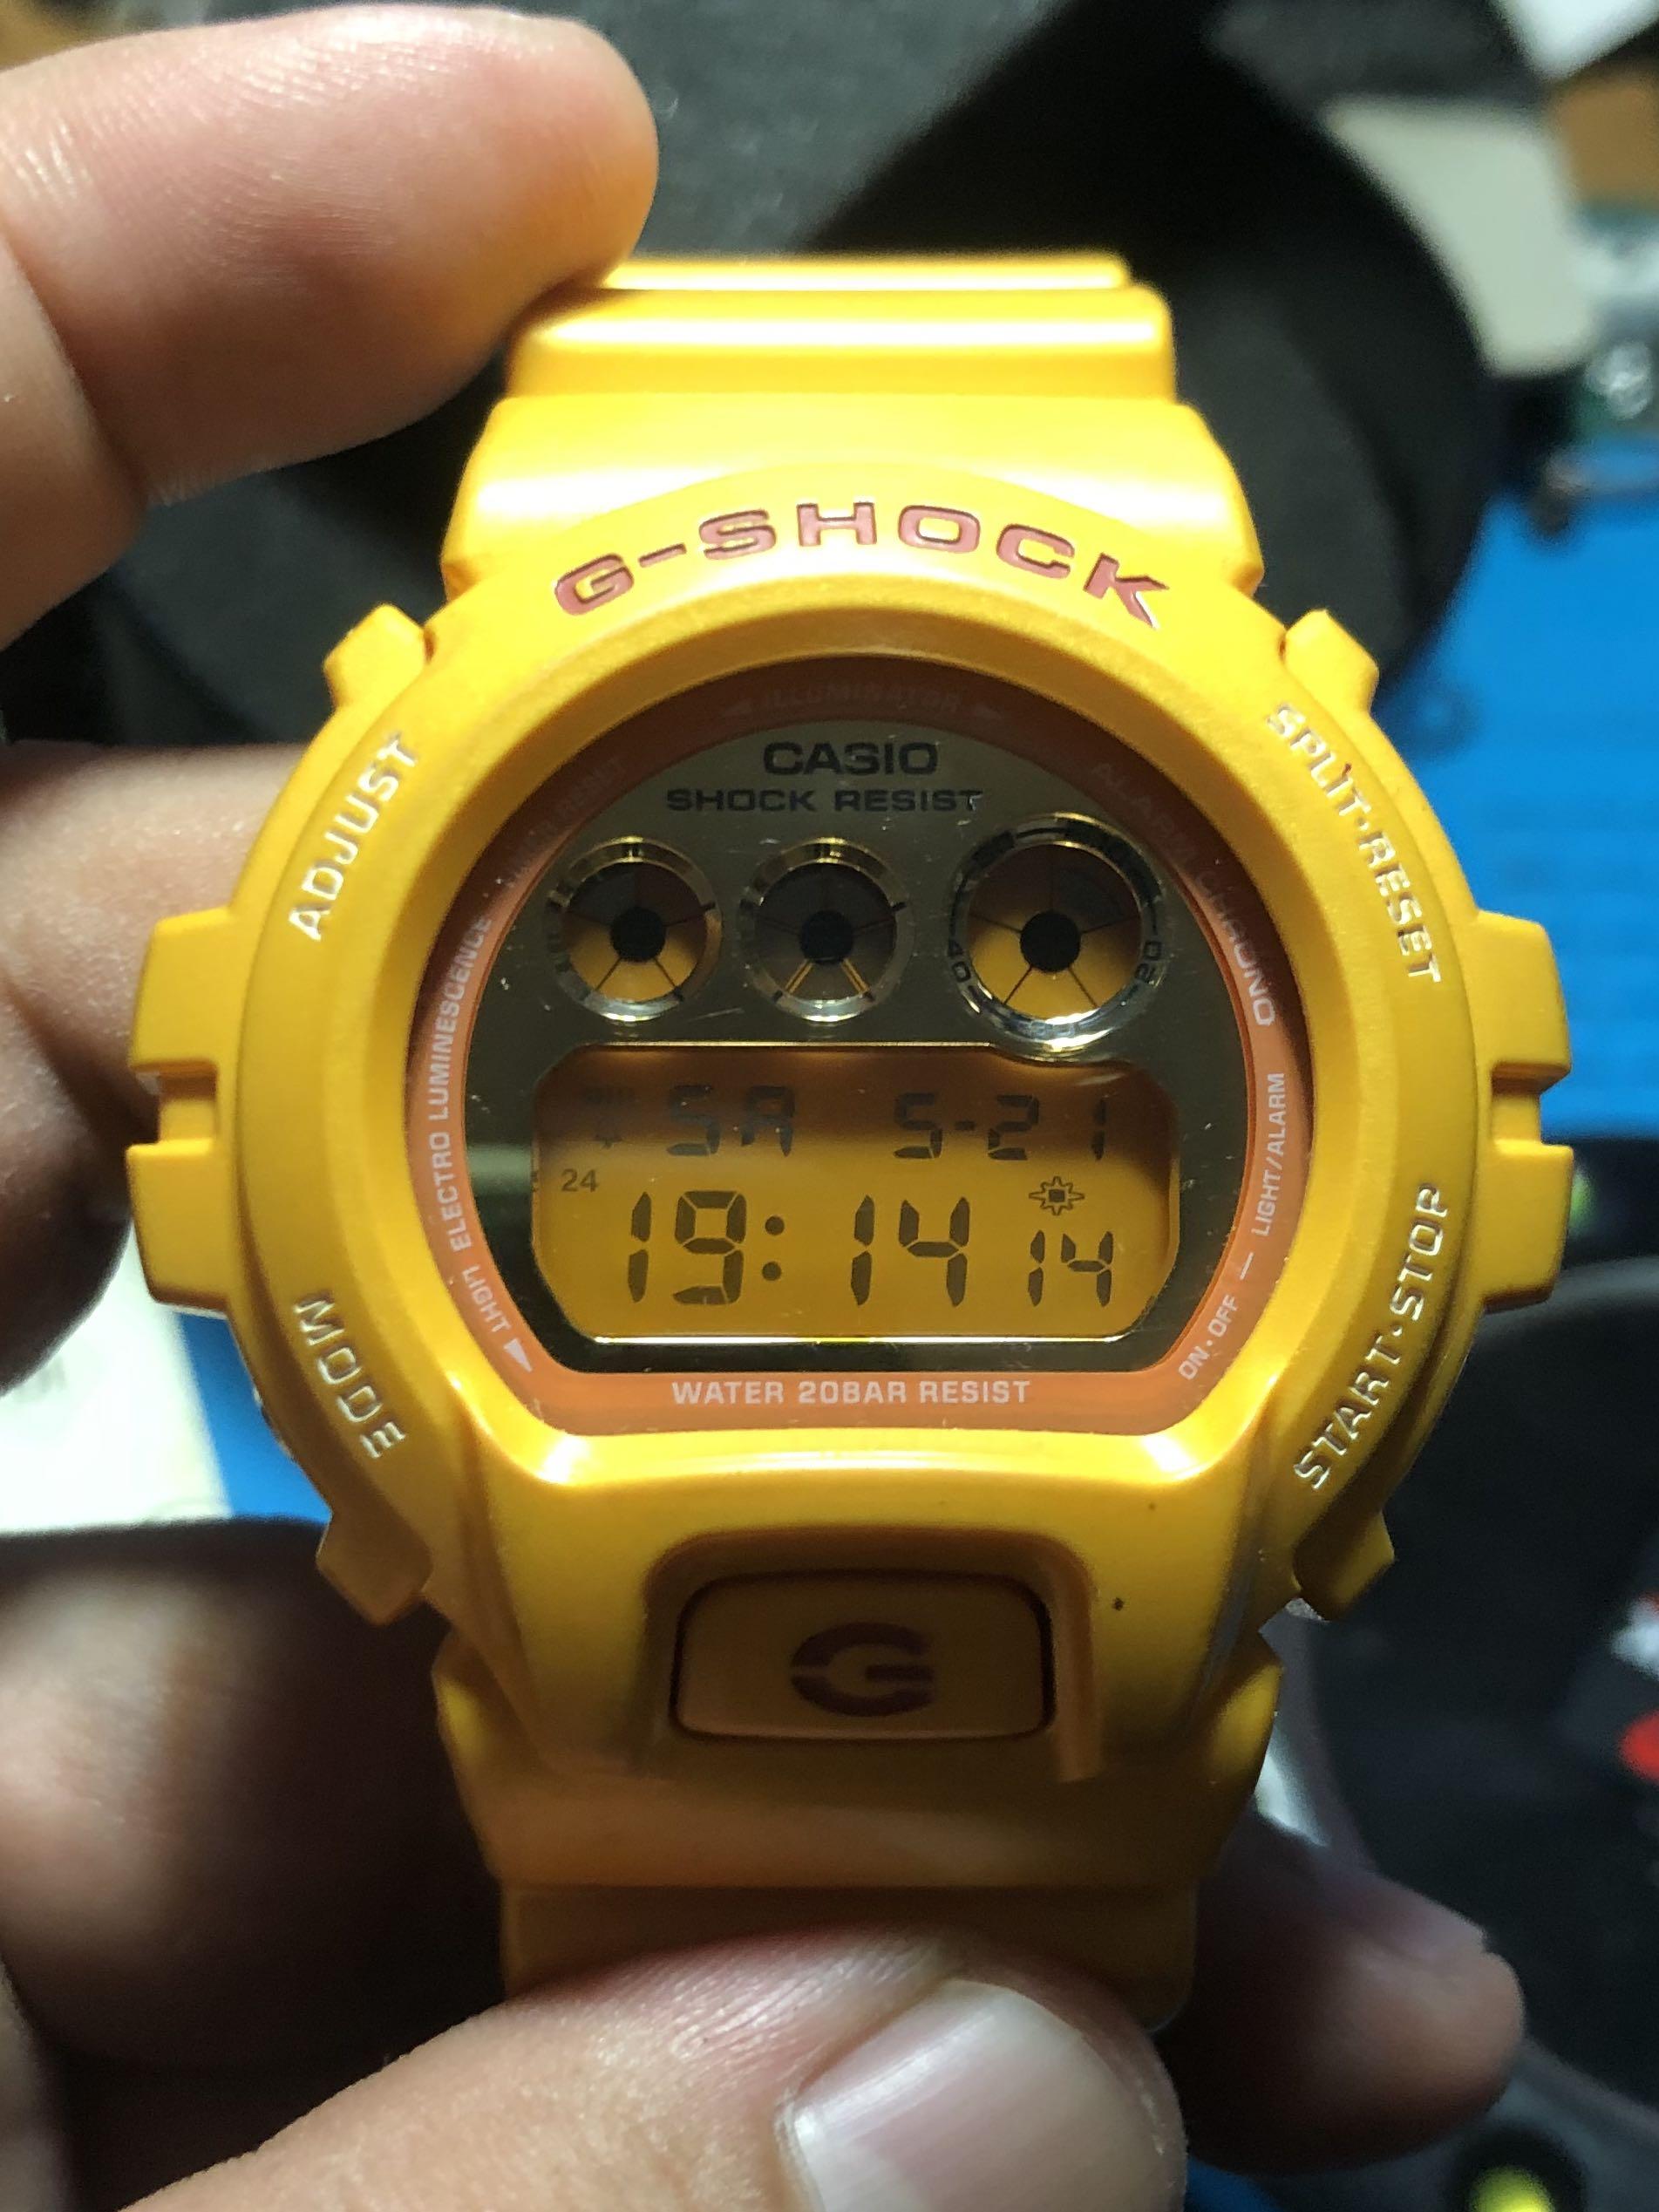 Gshock DW-6900-SB9 ( Manggo ) by Casio, Men's Fashion, Watches ...